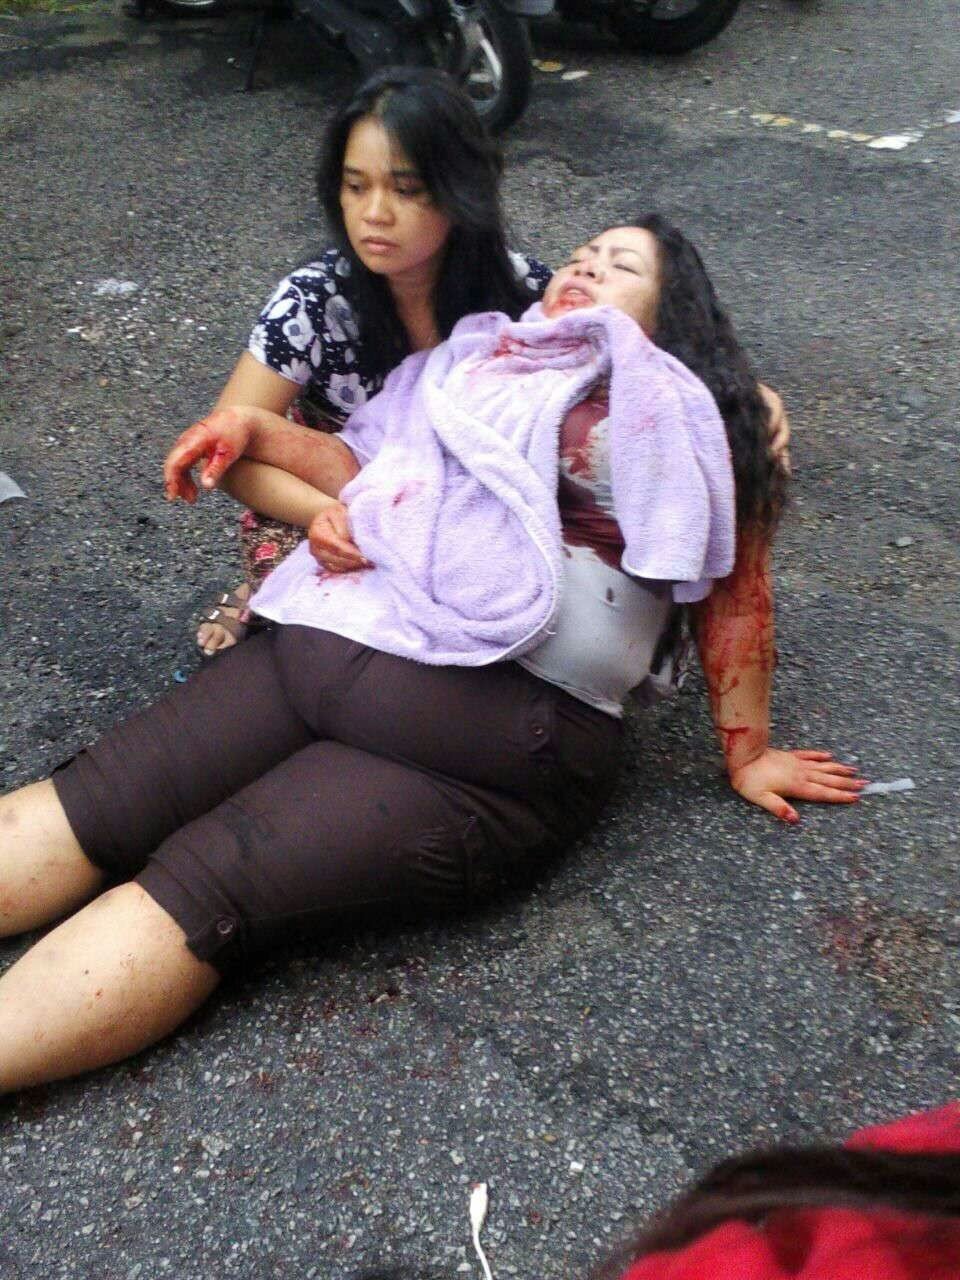 一名印尼籍妇女欲大声喝止劫匪在沙登和平村组屋干案时，反被劫匪刺伤后颈，当场血流如注。